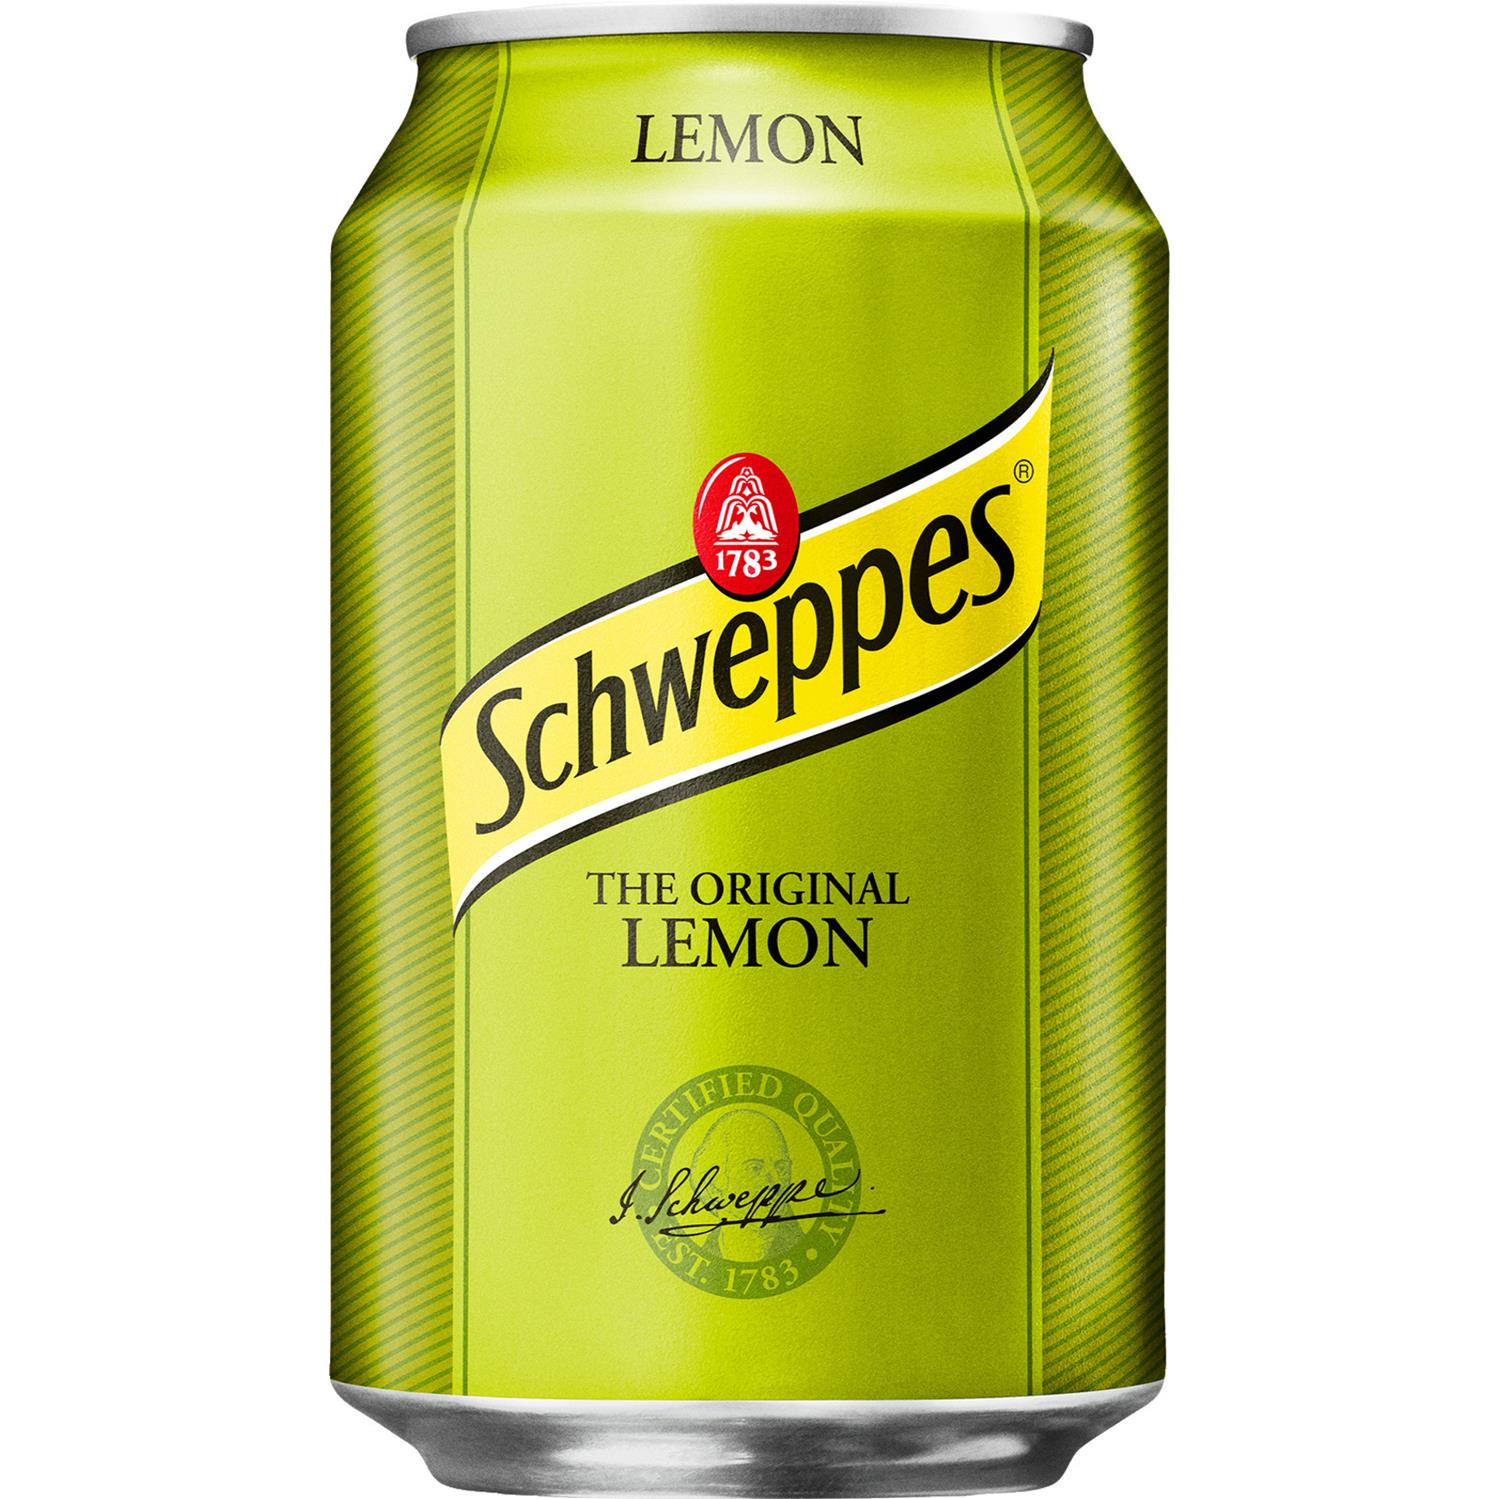 Gå forud lommelygter Sprout Schweppes Lemon - sodavand, 24x33cl dåse - Grænsehandel til billige priser